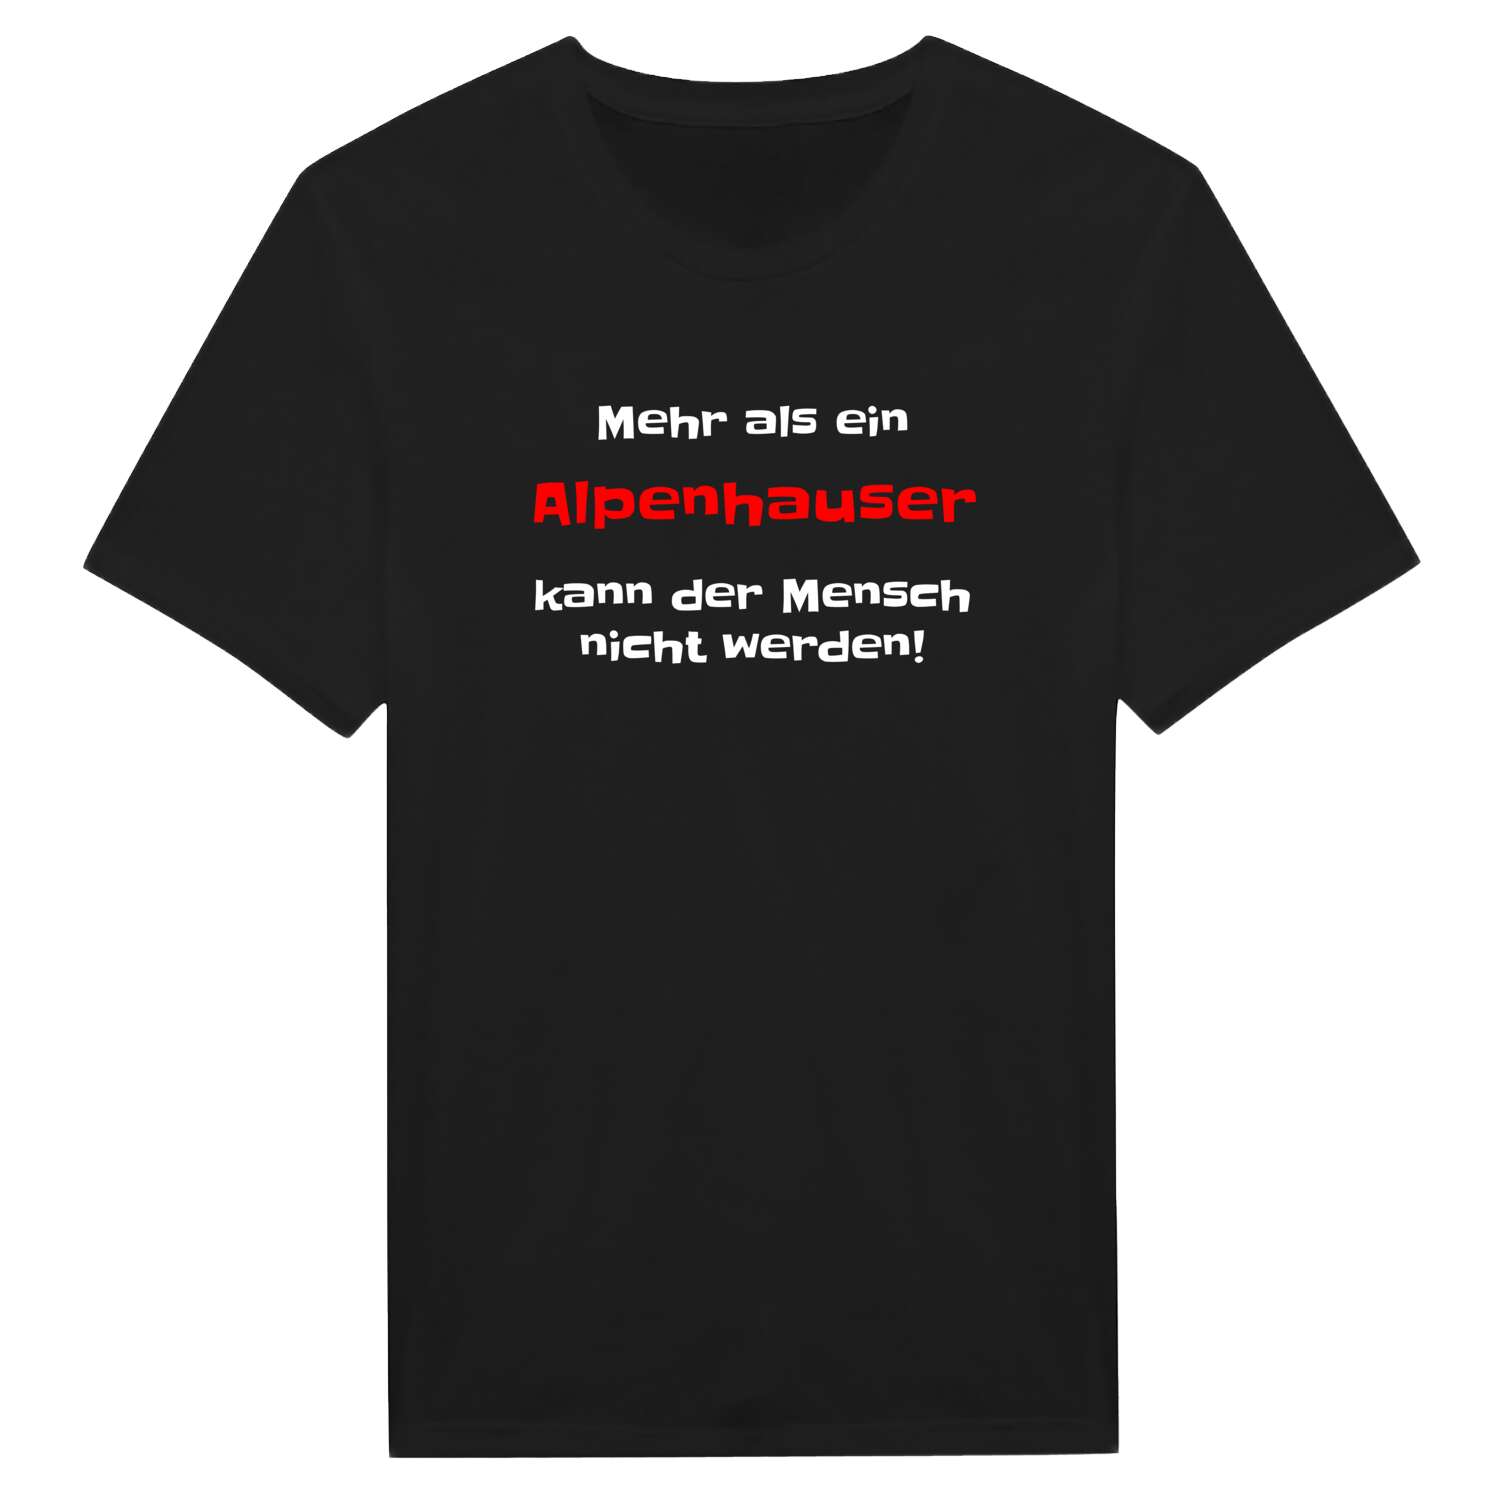 Alpenhaus T-Shirt »Mehr als ein«